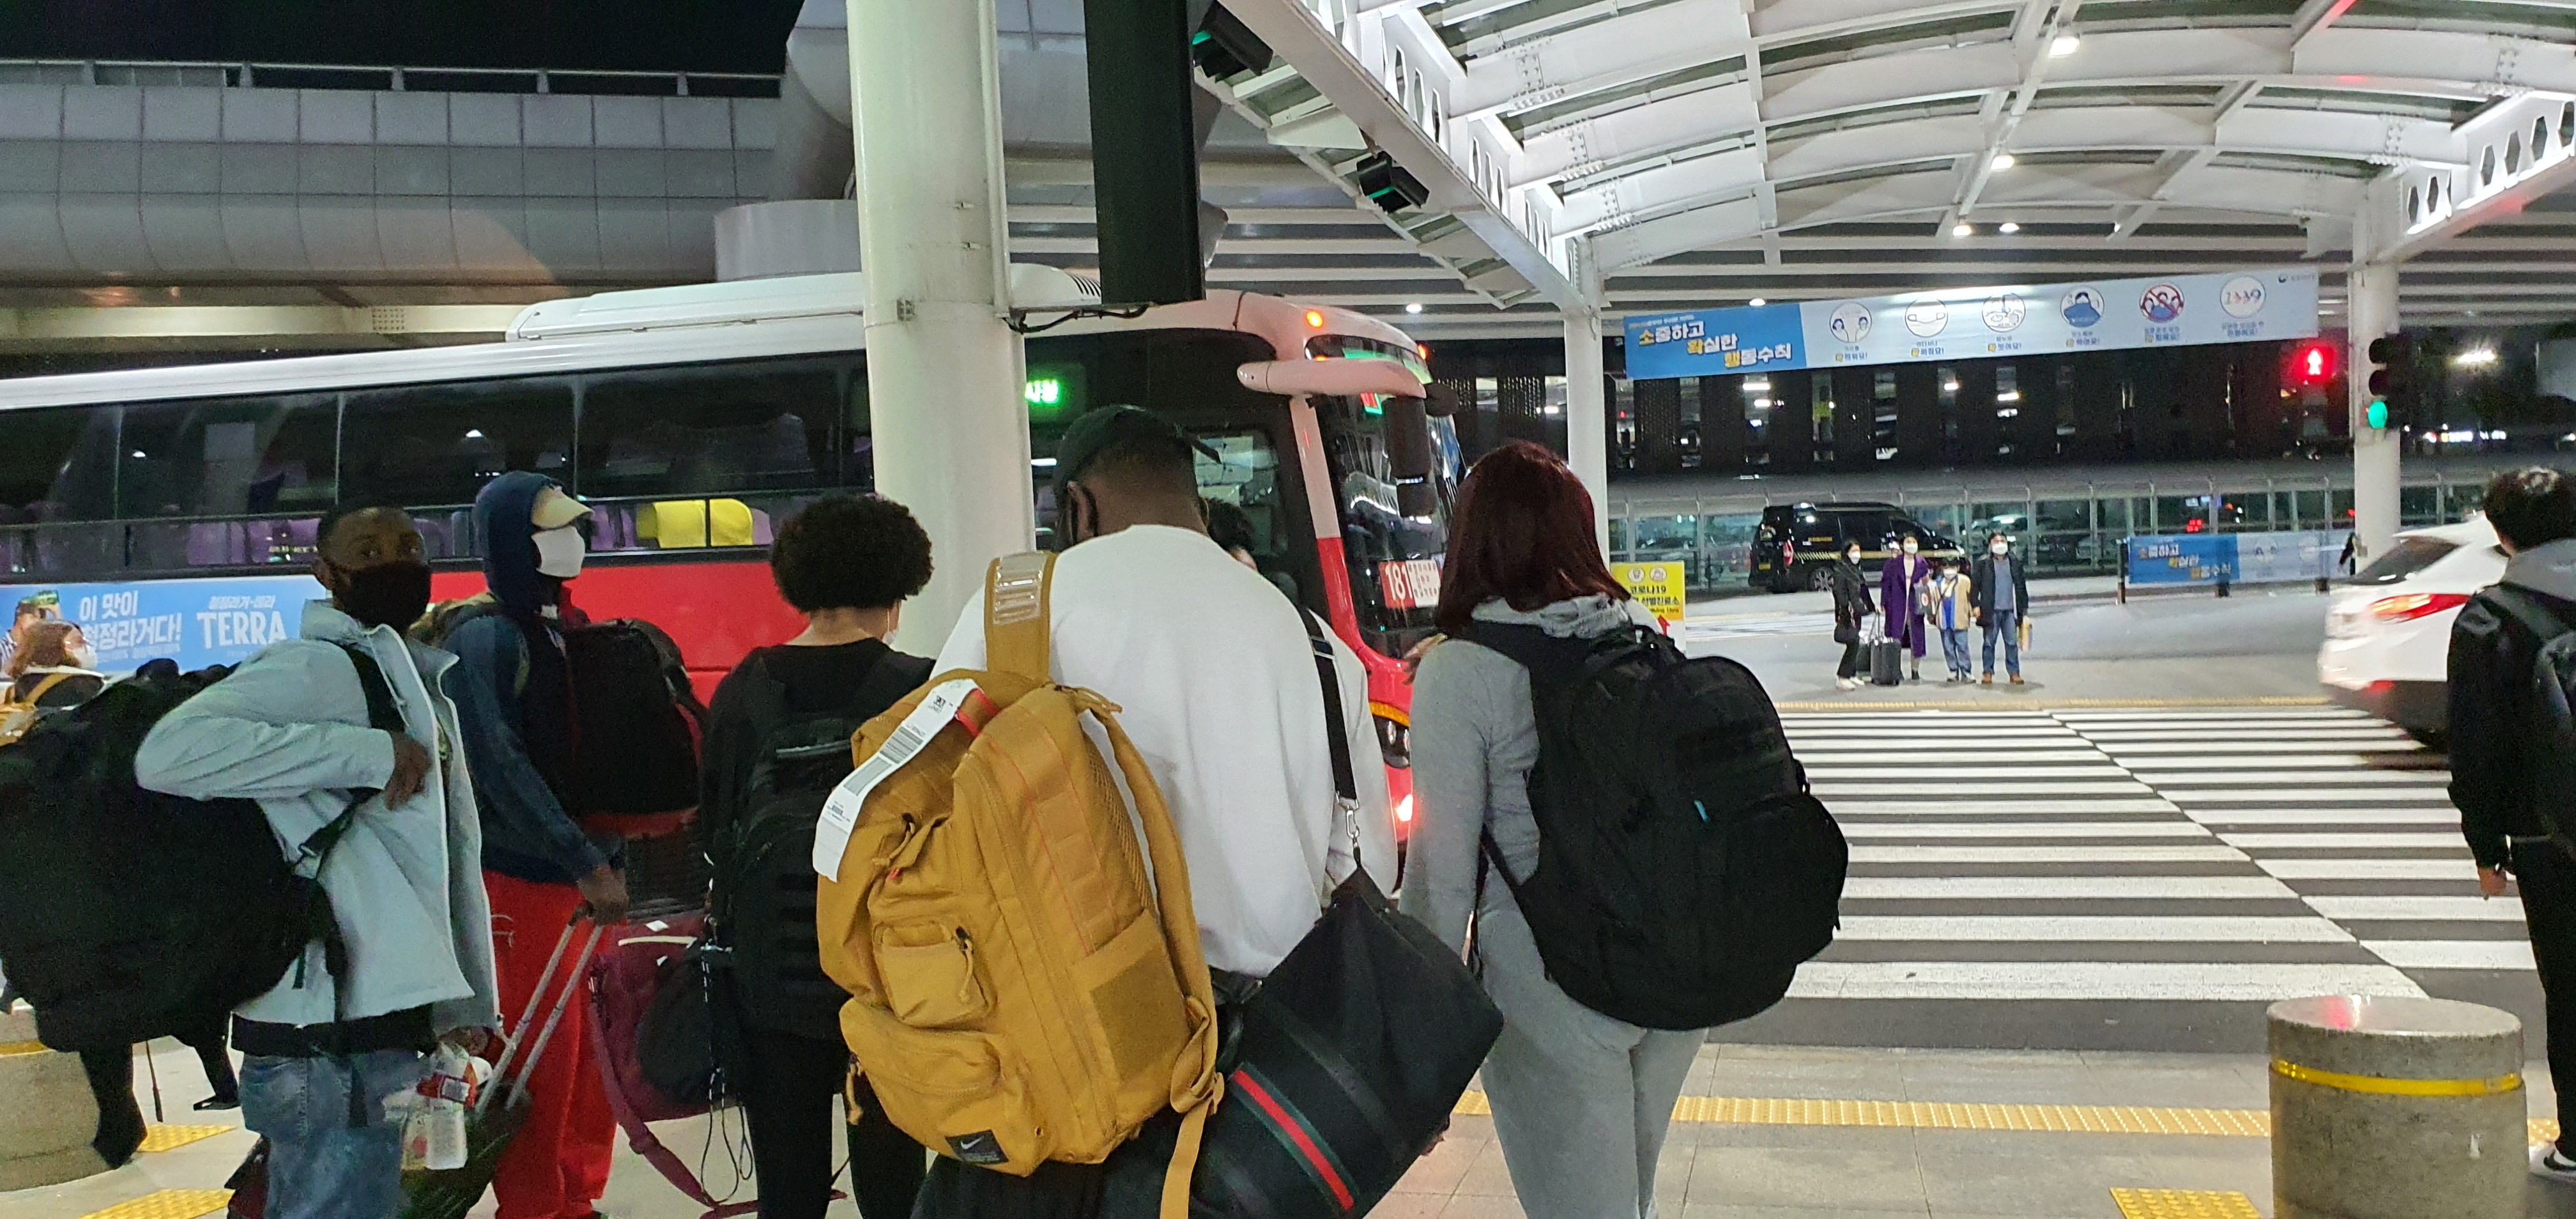 제주공항에서 여행객들이 버스를 기다리고 있다.코로나 19 확산으로 제주관광업계는 여행객이 다시 줄어들지나 않을까 촉각을 곤두세우고 있다.(서울신문 DB)